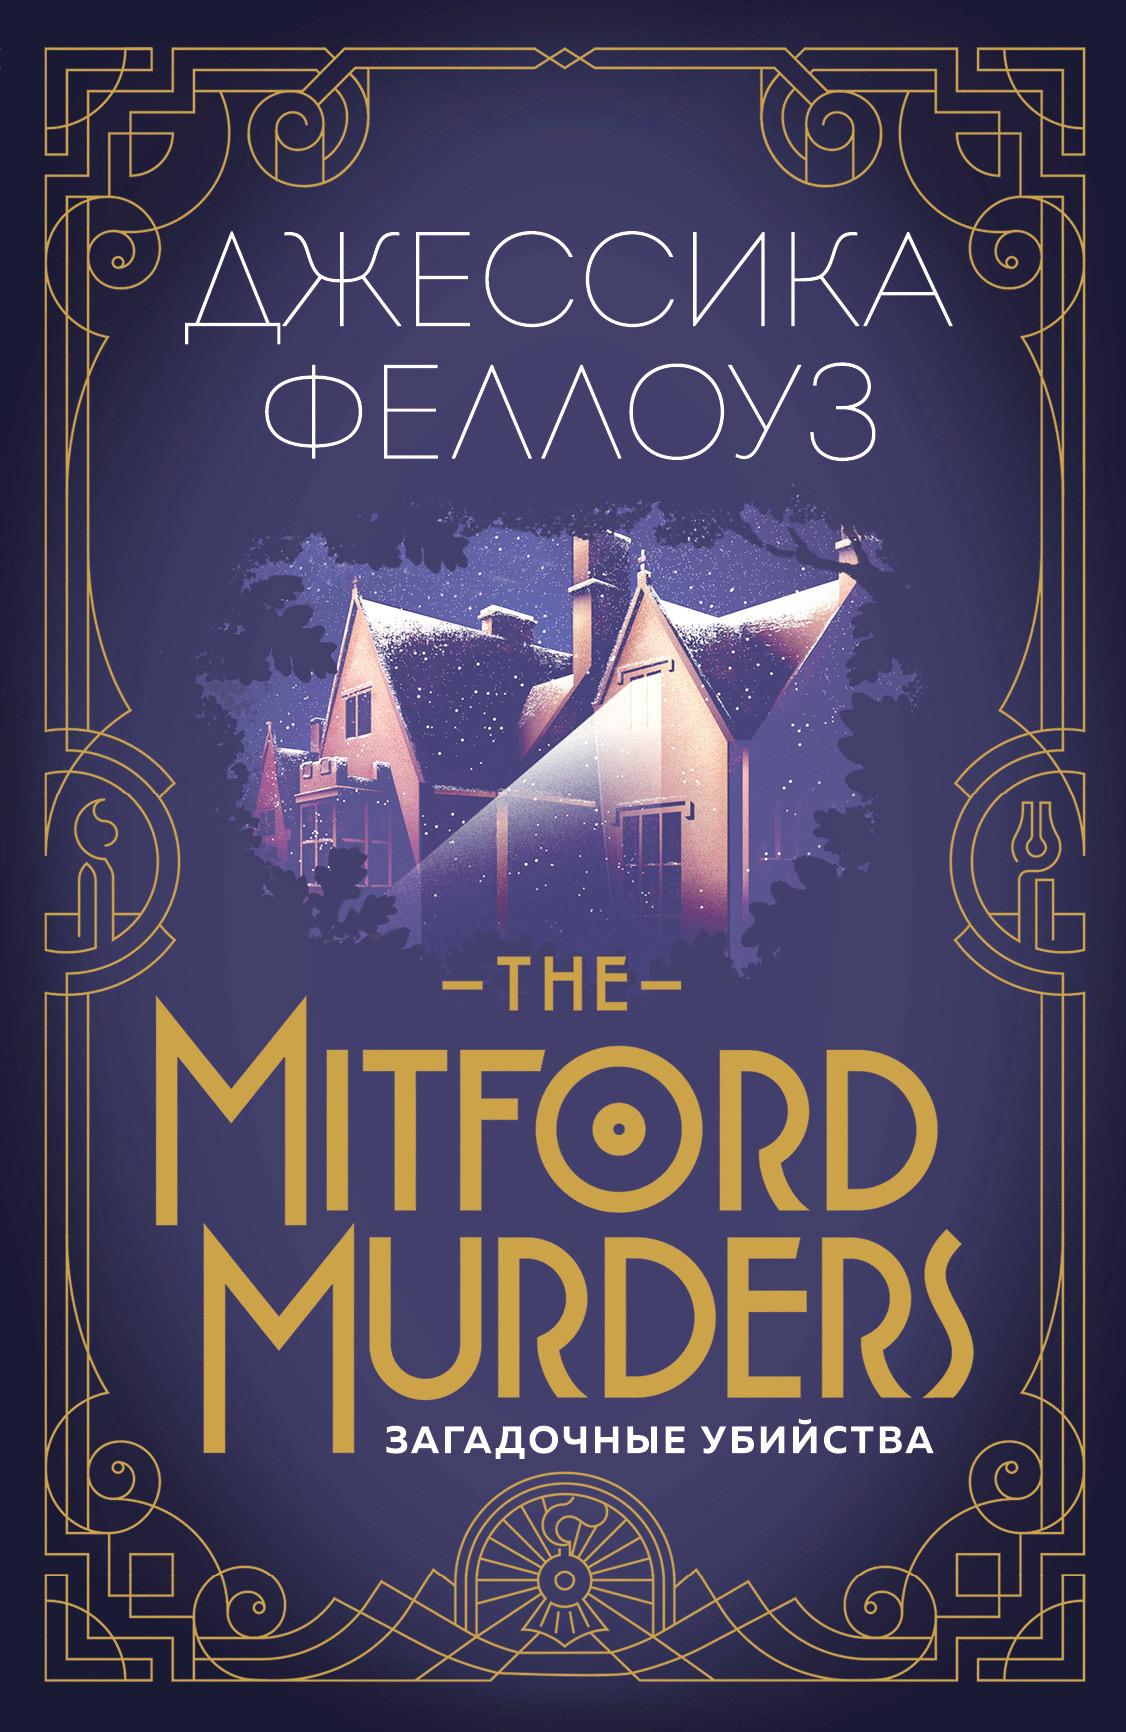 Скачать The Mitford murders. Загадочные убийства быстро